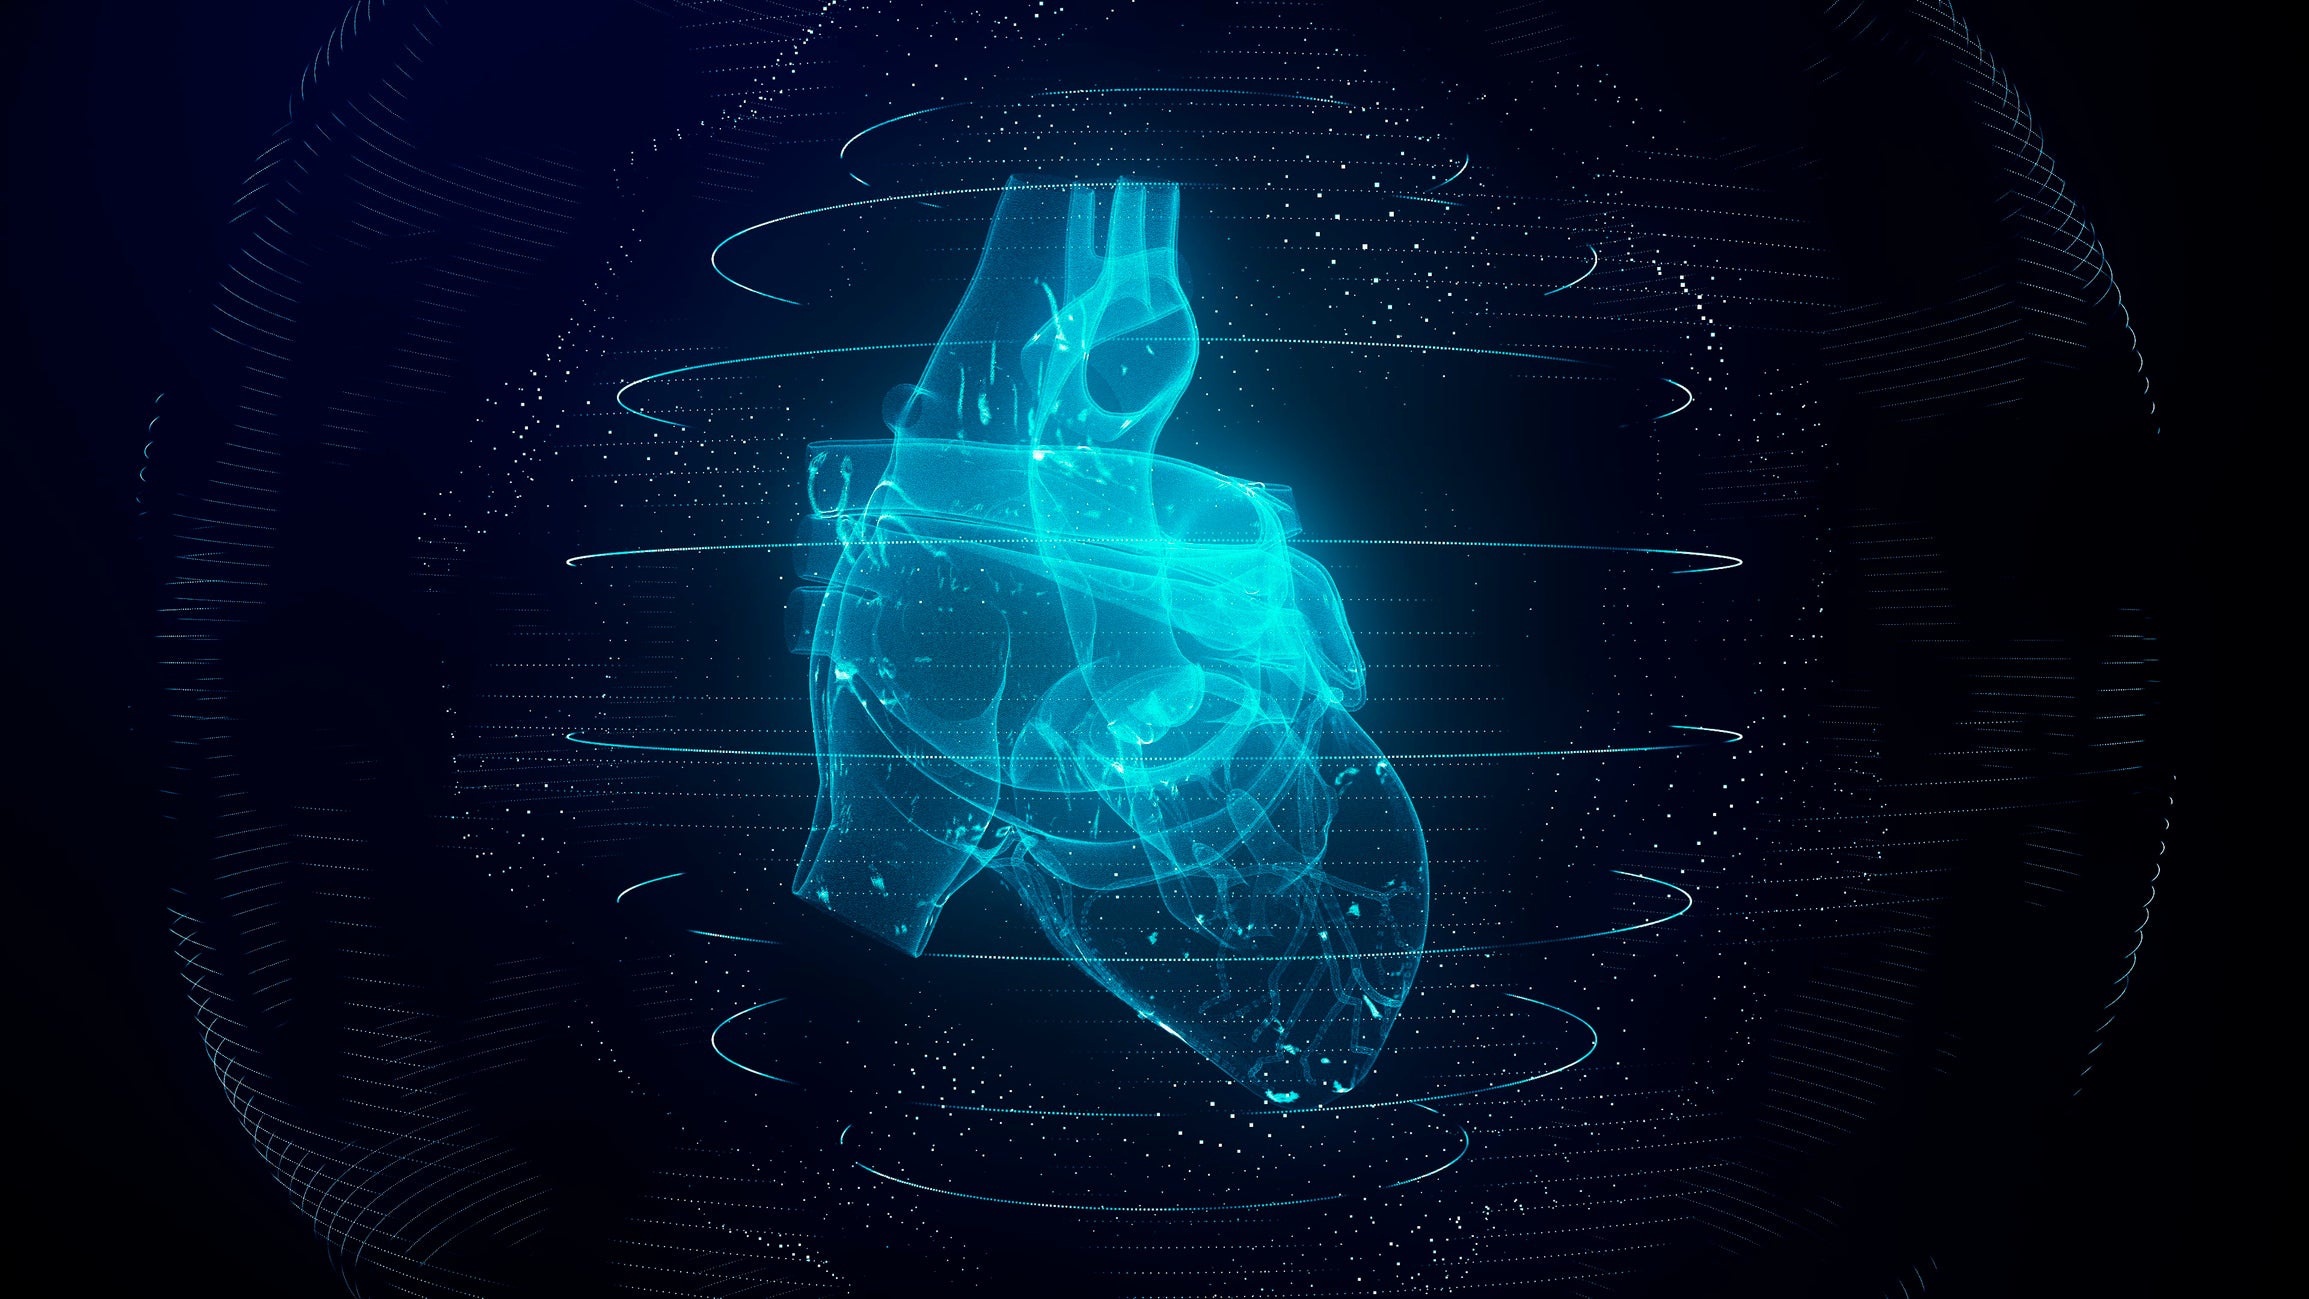 GE HealthCare lansează o nouă tehnologie care reduce scanările cardiace RMN cu până la 83%